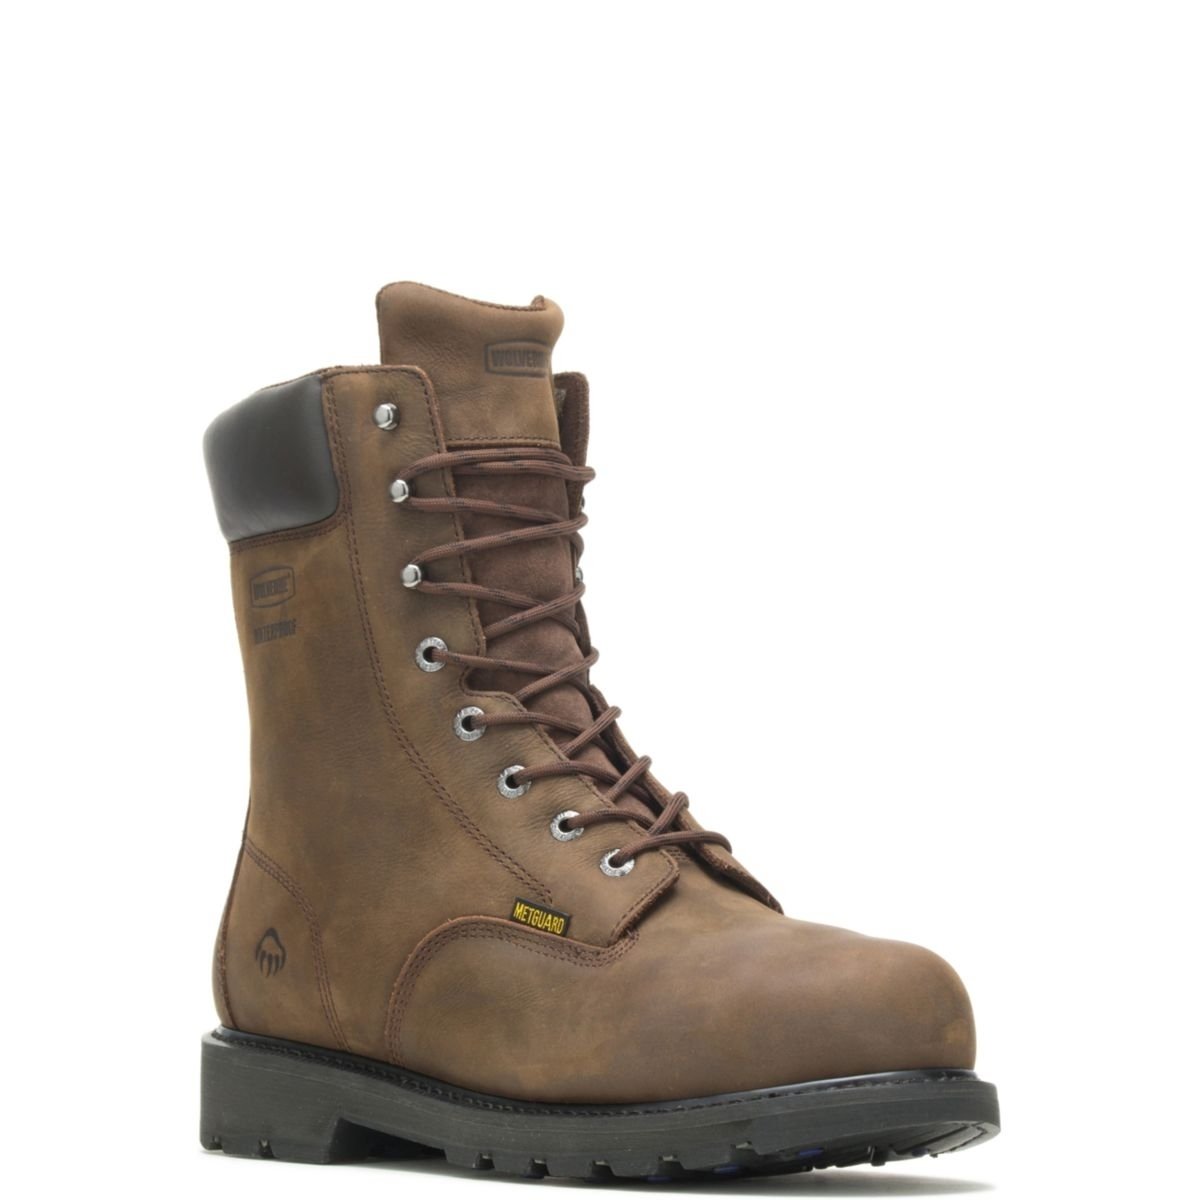 WOLVERINE Men's McKay 8 Waterproof Steel Toe Work Boot Brown - W05680 10 BROWN - BROWN, 9.5